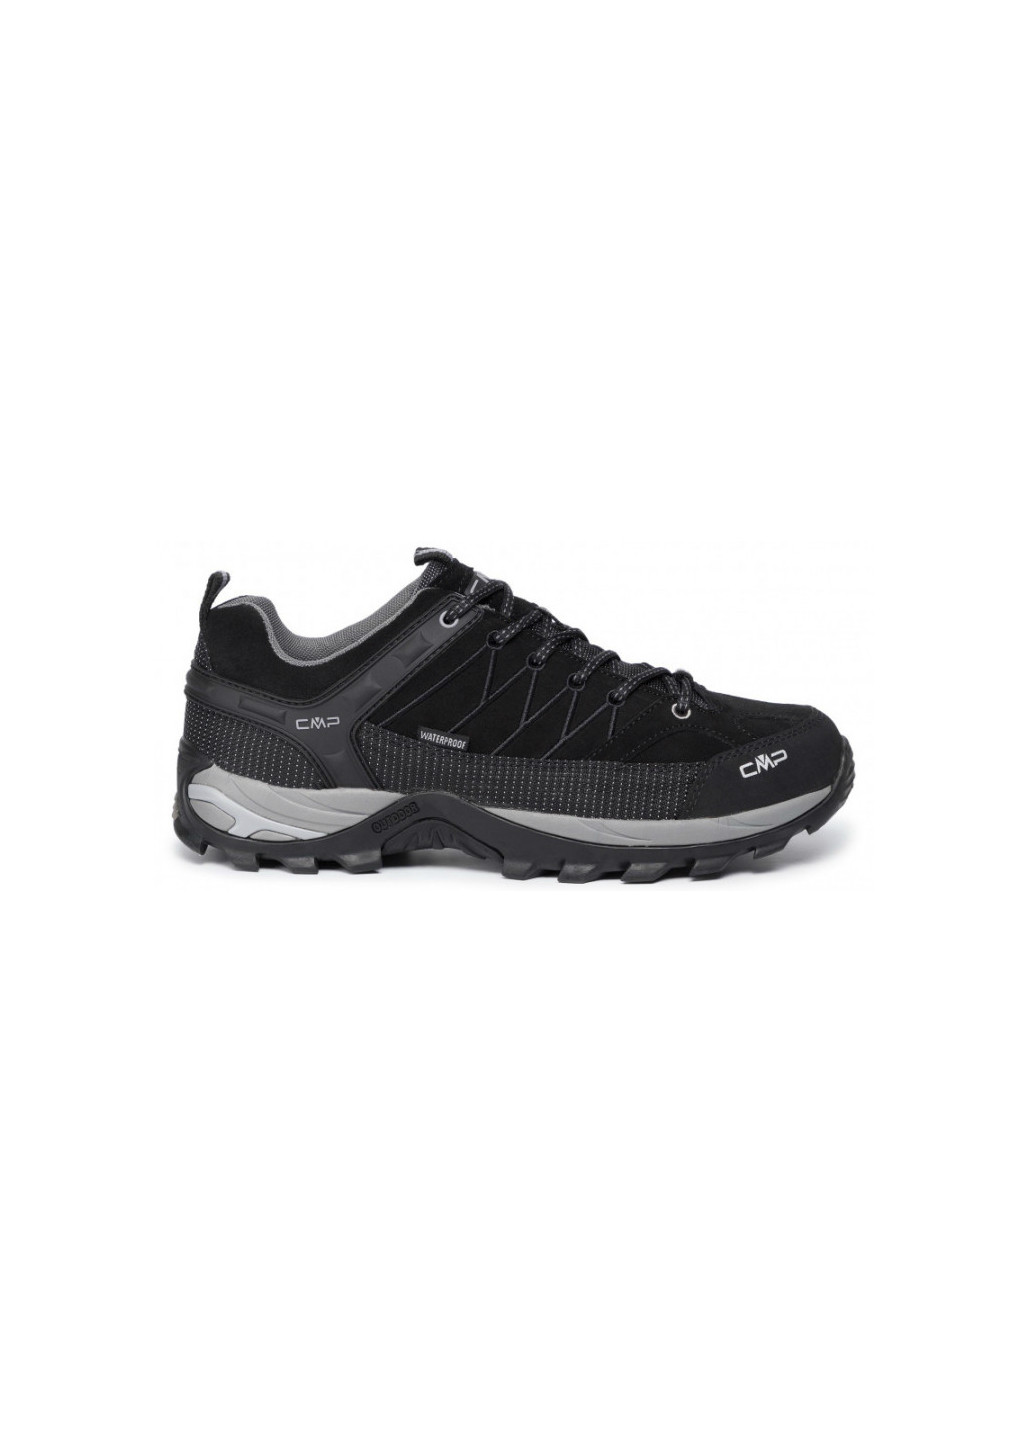 Черные демисезонные мужские кроссовки CMP Rigel Low Trekking Shoes